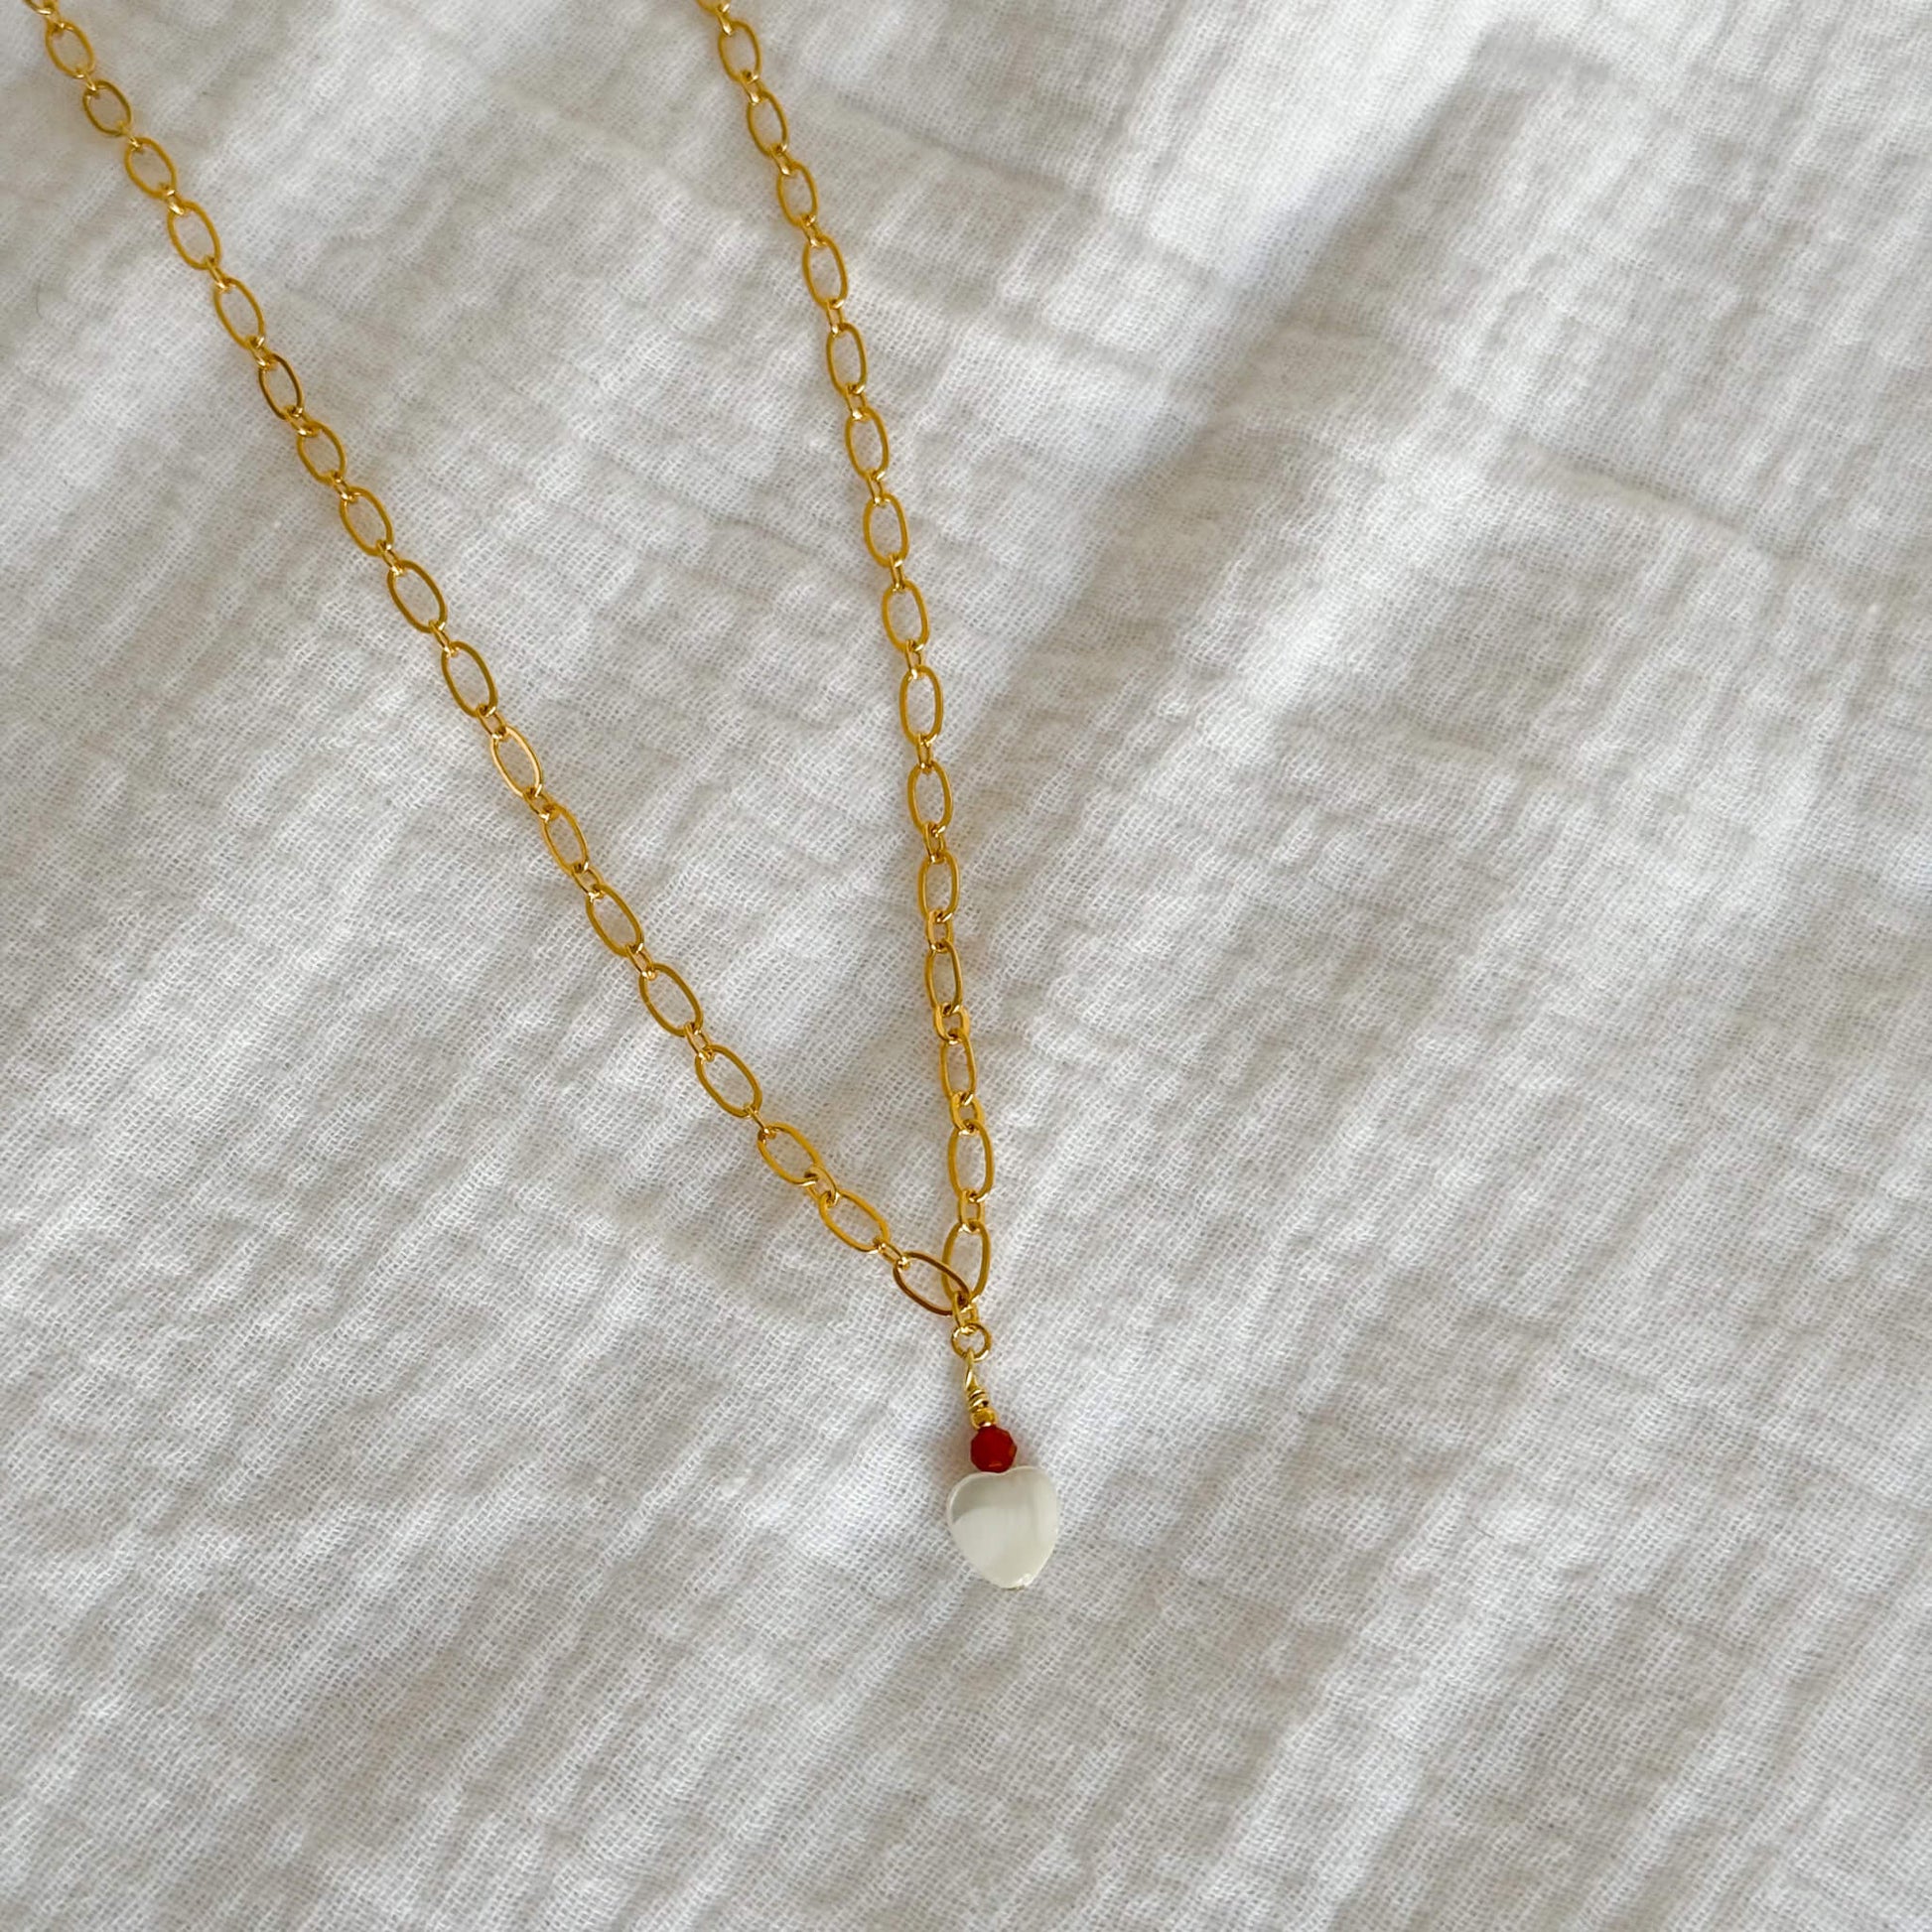 Collier Valentine avec coeur en nacre, perle de cornaline sur une chaine en plaqué or 